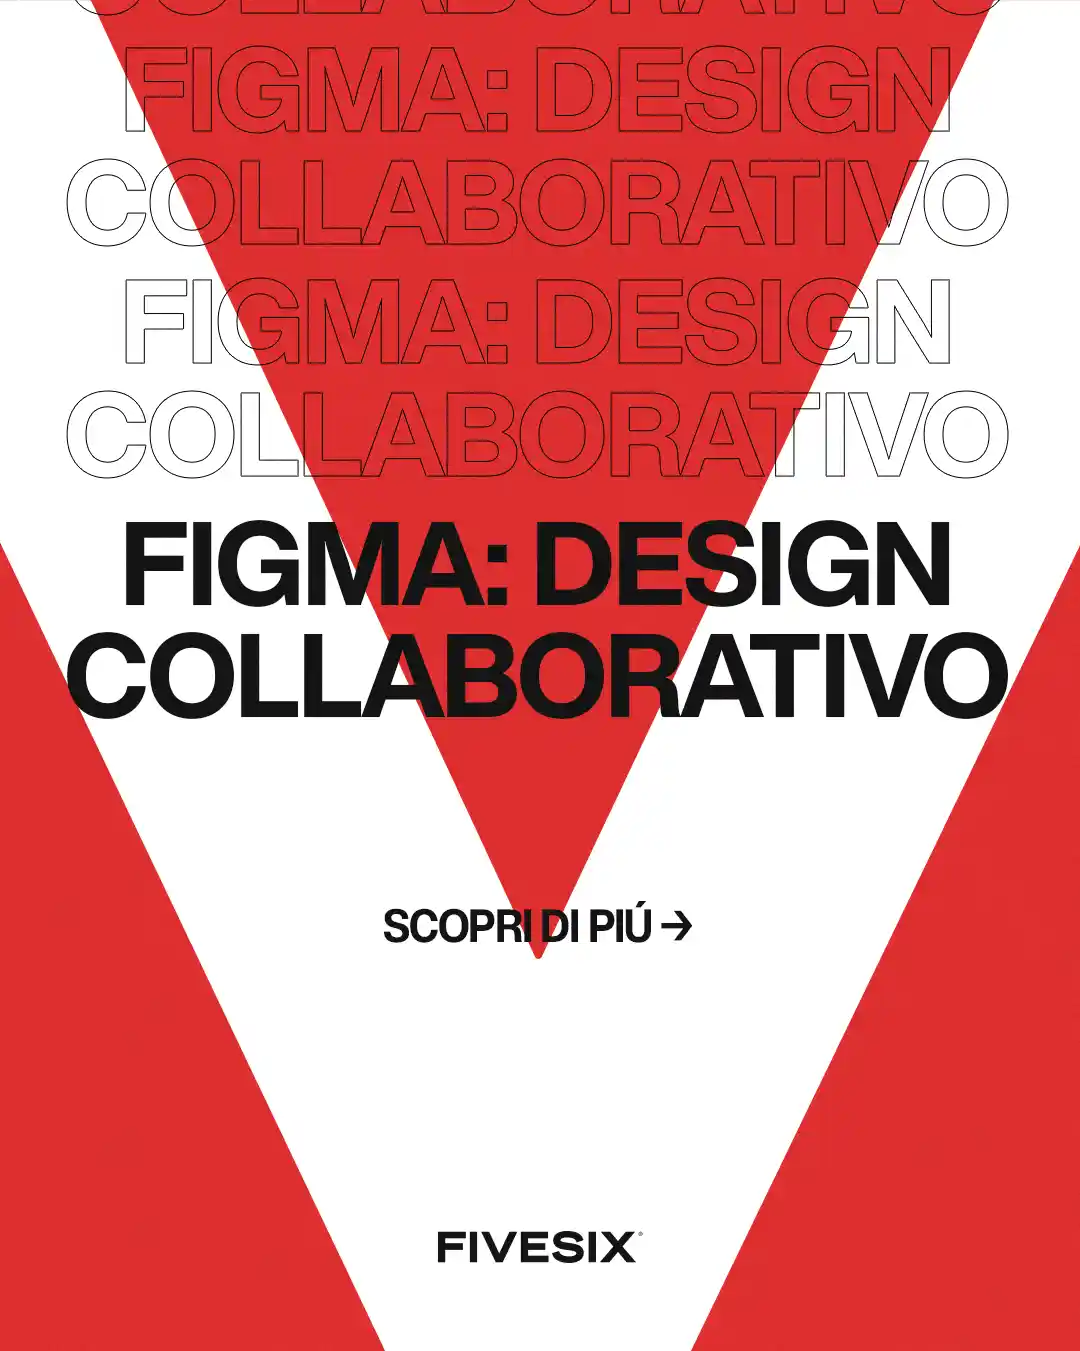 Immagine per 'Figma: Rivoluzionare il Design Collaborativo in Tempi di Lavoro Remoto' - Fivesix Studio. Specializzati in Branding, Personal Branding, Marketing e Comunicazione.